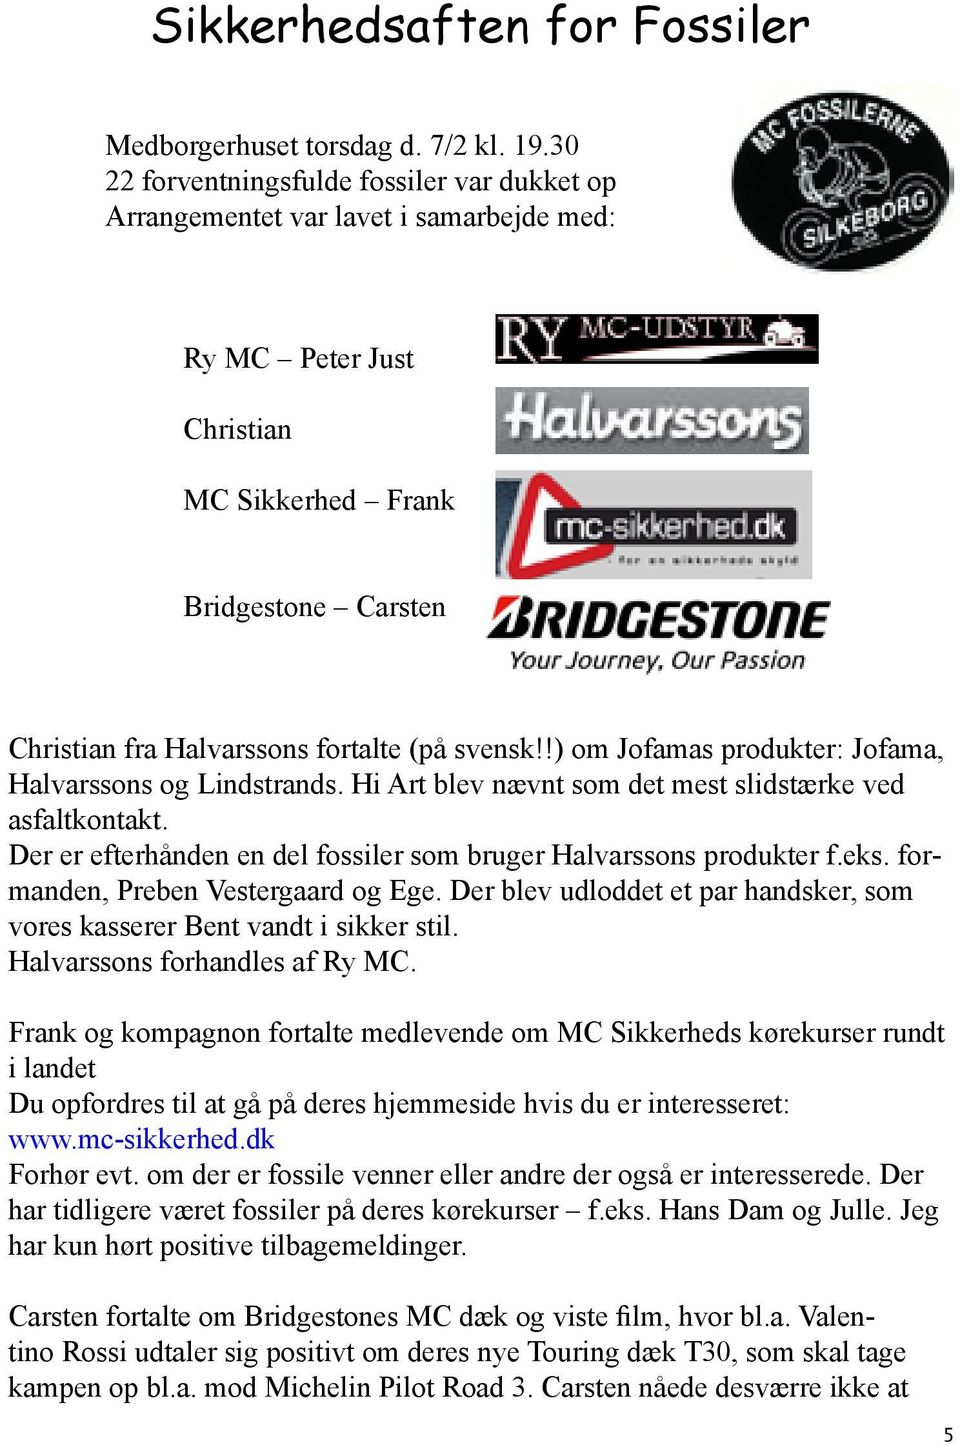 svensk!!) om Jofamas produkter: Jofama, Halvarssons og Lindstrands. Hi Art blev nævnt som det mest slidstærke ved asfaltkontakt. Der er efterhånden en del fossiler som bruger Halvarssons produkter f.